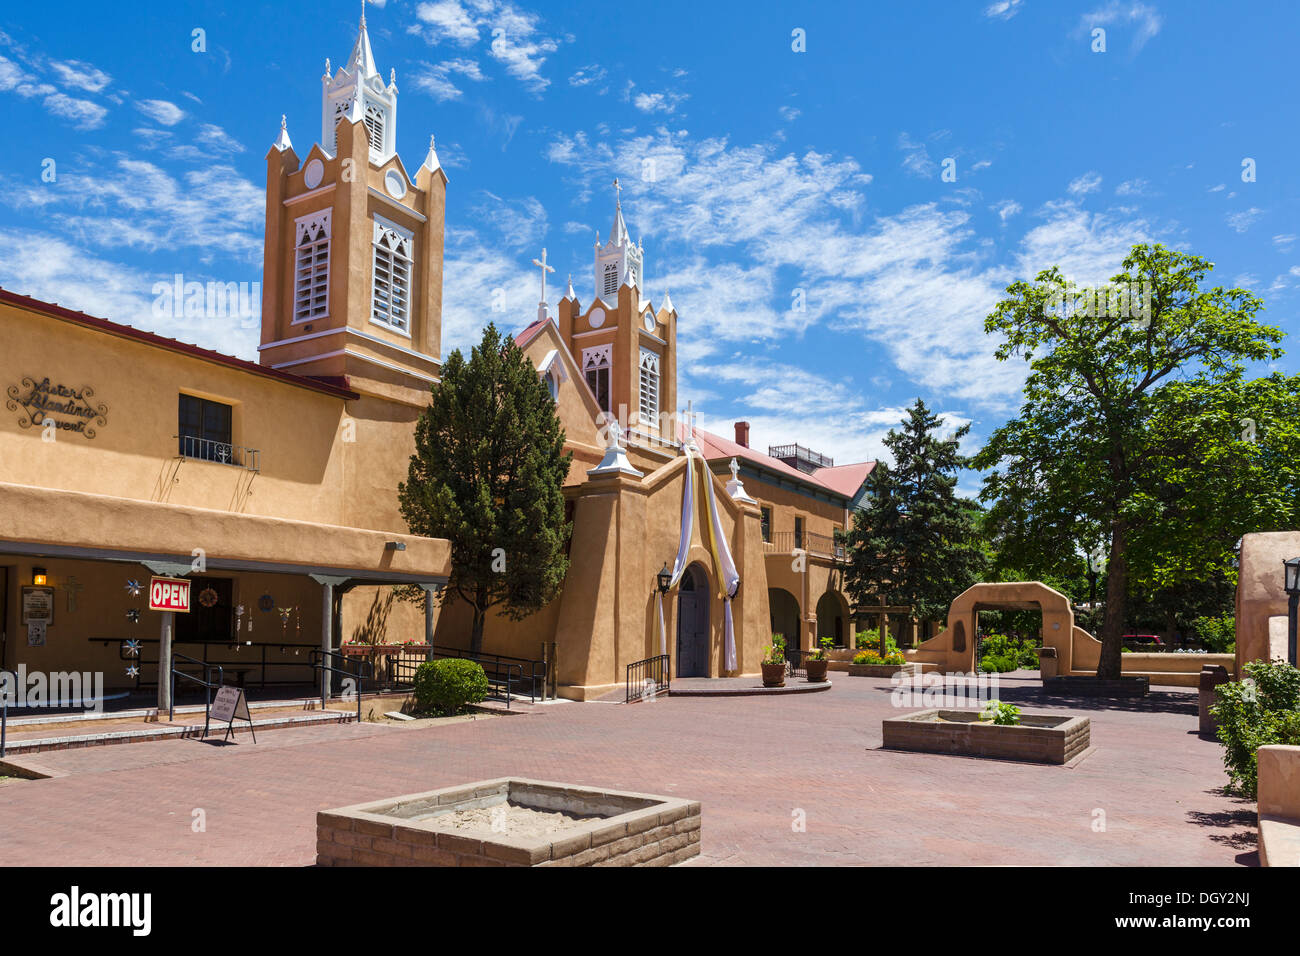 San Felipe de Neri Church, Old Town Plaza, Old Town, Albuquerque, New Mexico, USA Stock Photo